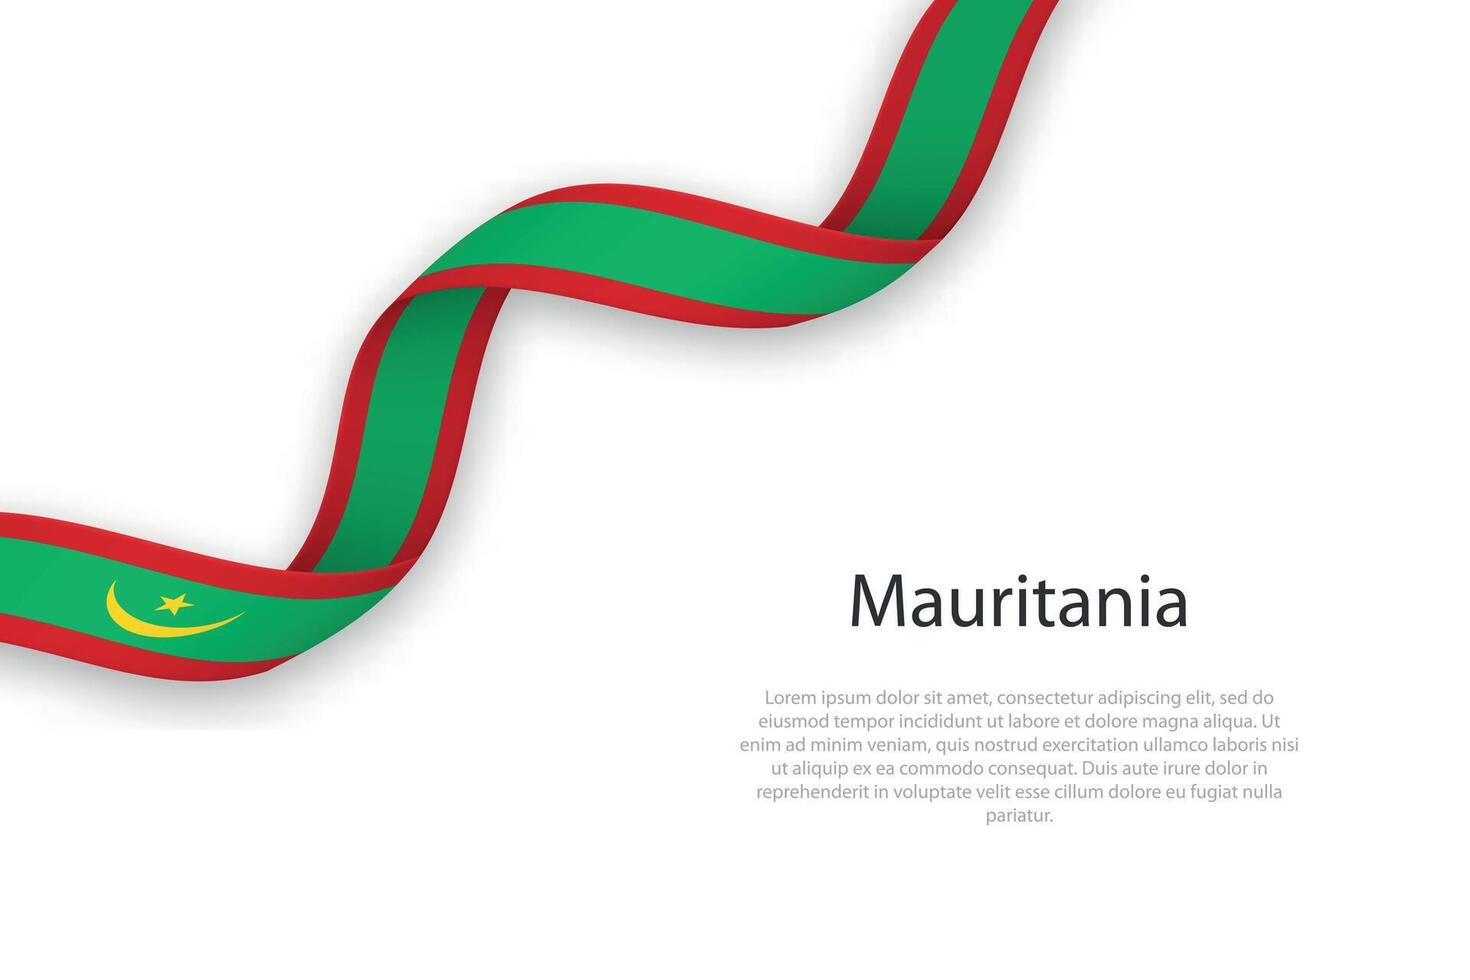 acenando fita com bandeira do Mauritânia vetor